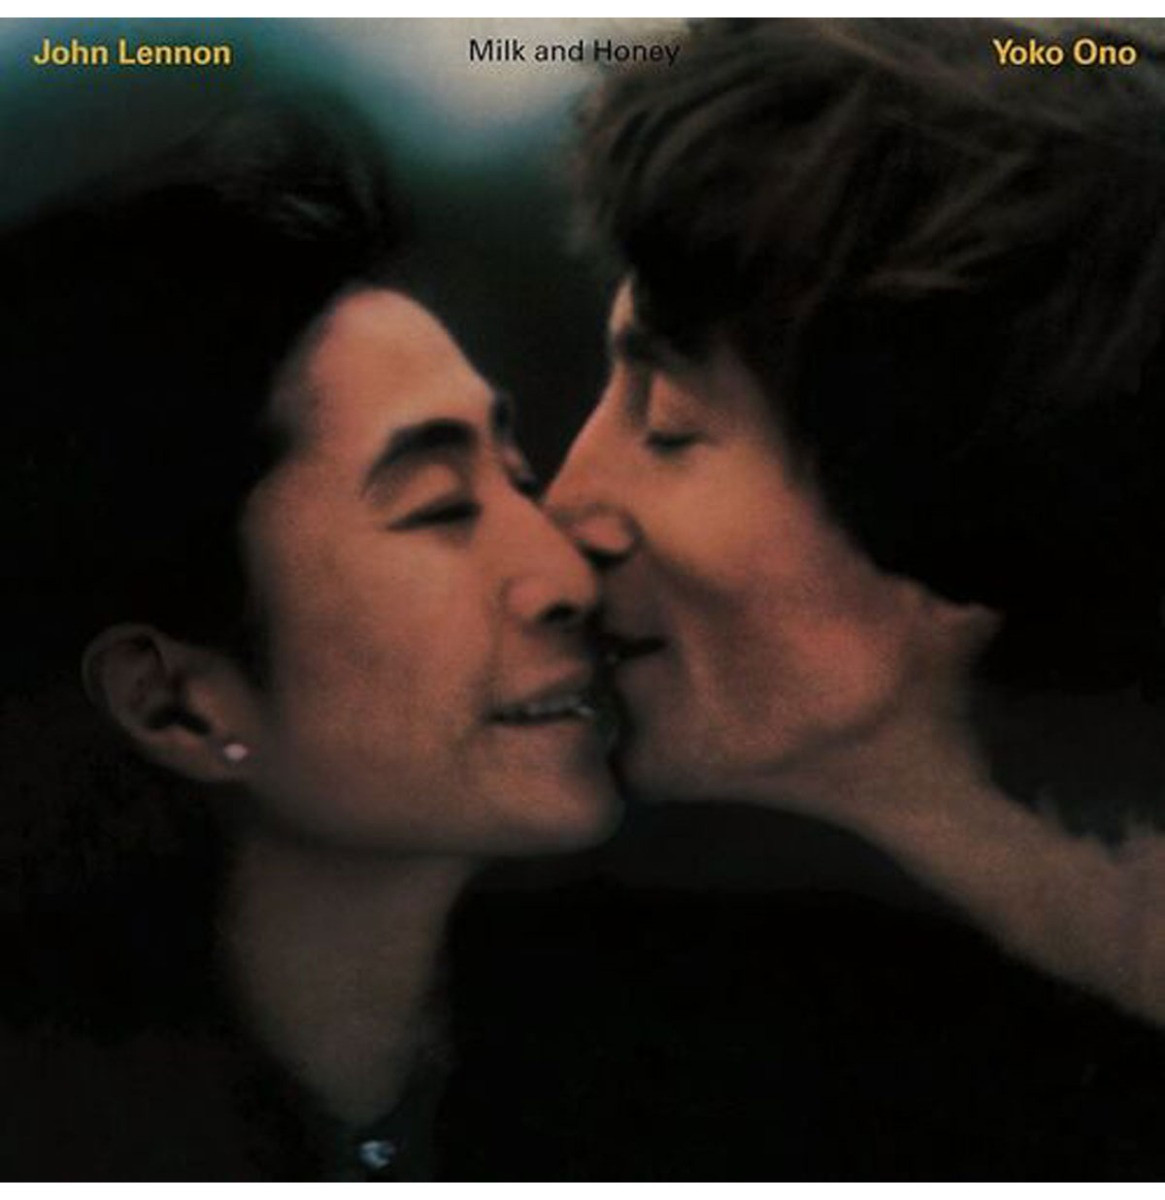 John Lennon And Yoko Ono - Milk And Honey LP